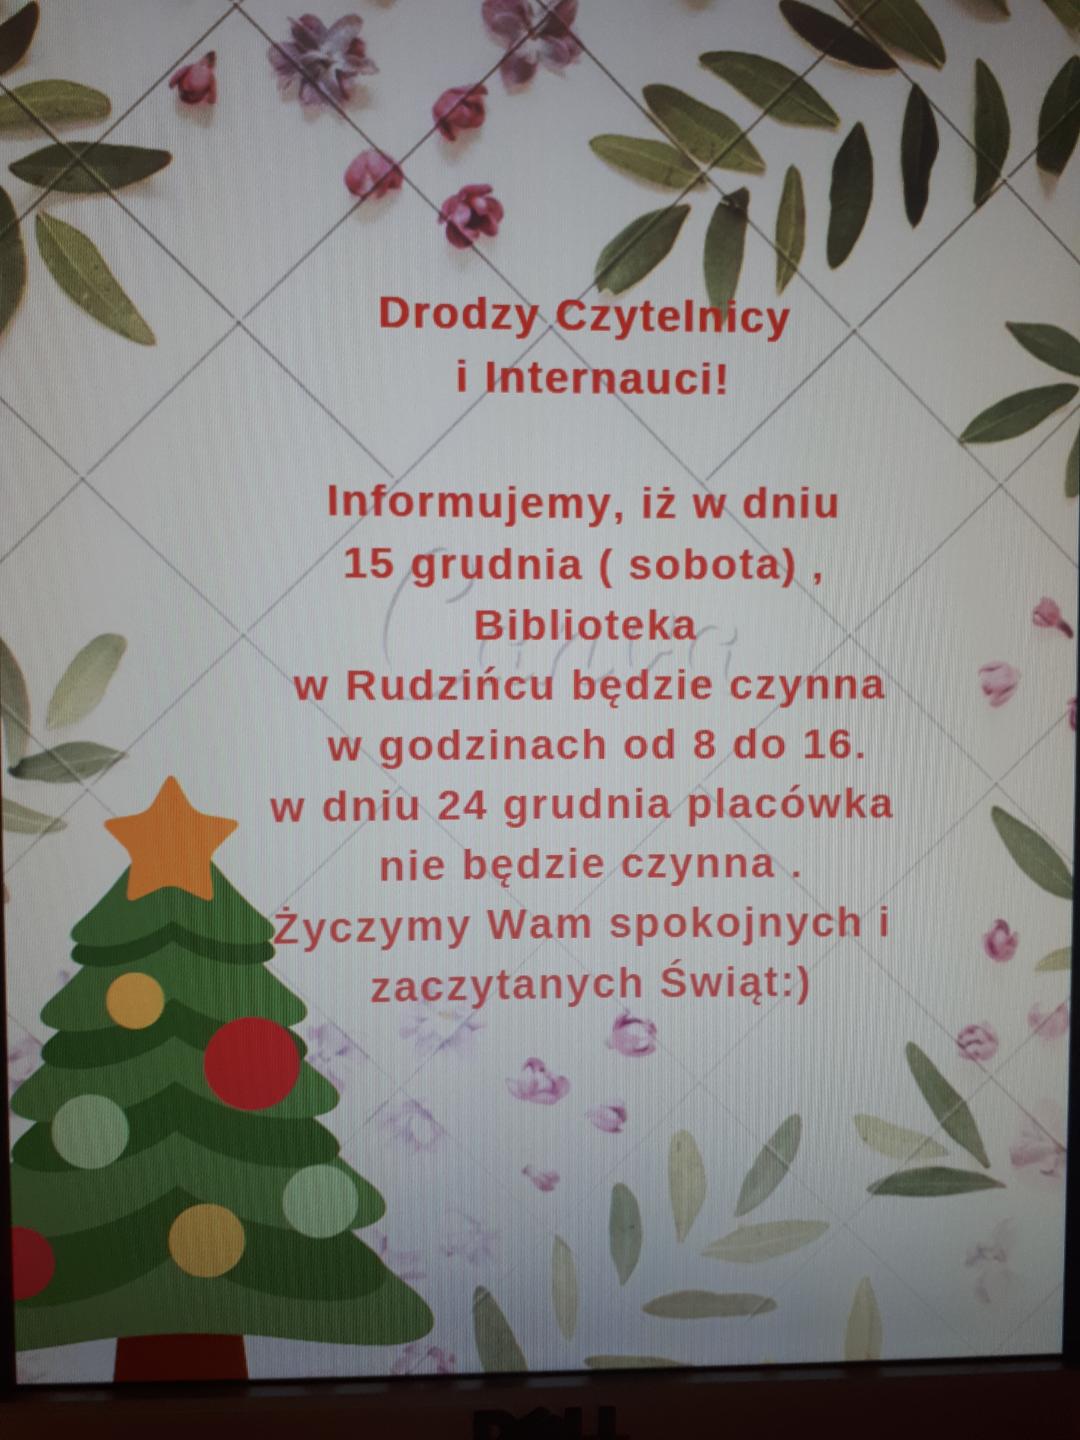 W dniu 15 grudnia Biblioteka w Rudzińcu będzie czynna w godzinach od 8 do 16, w dniu 24 grudnia placówka będzie nieczynna.